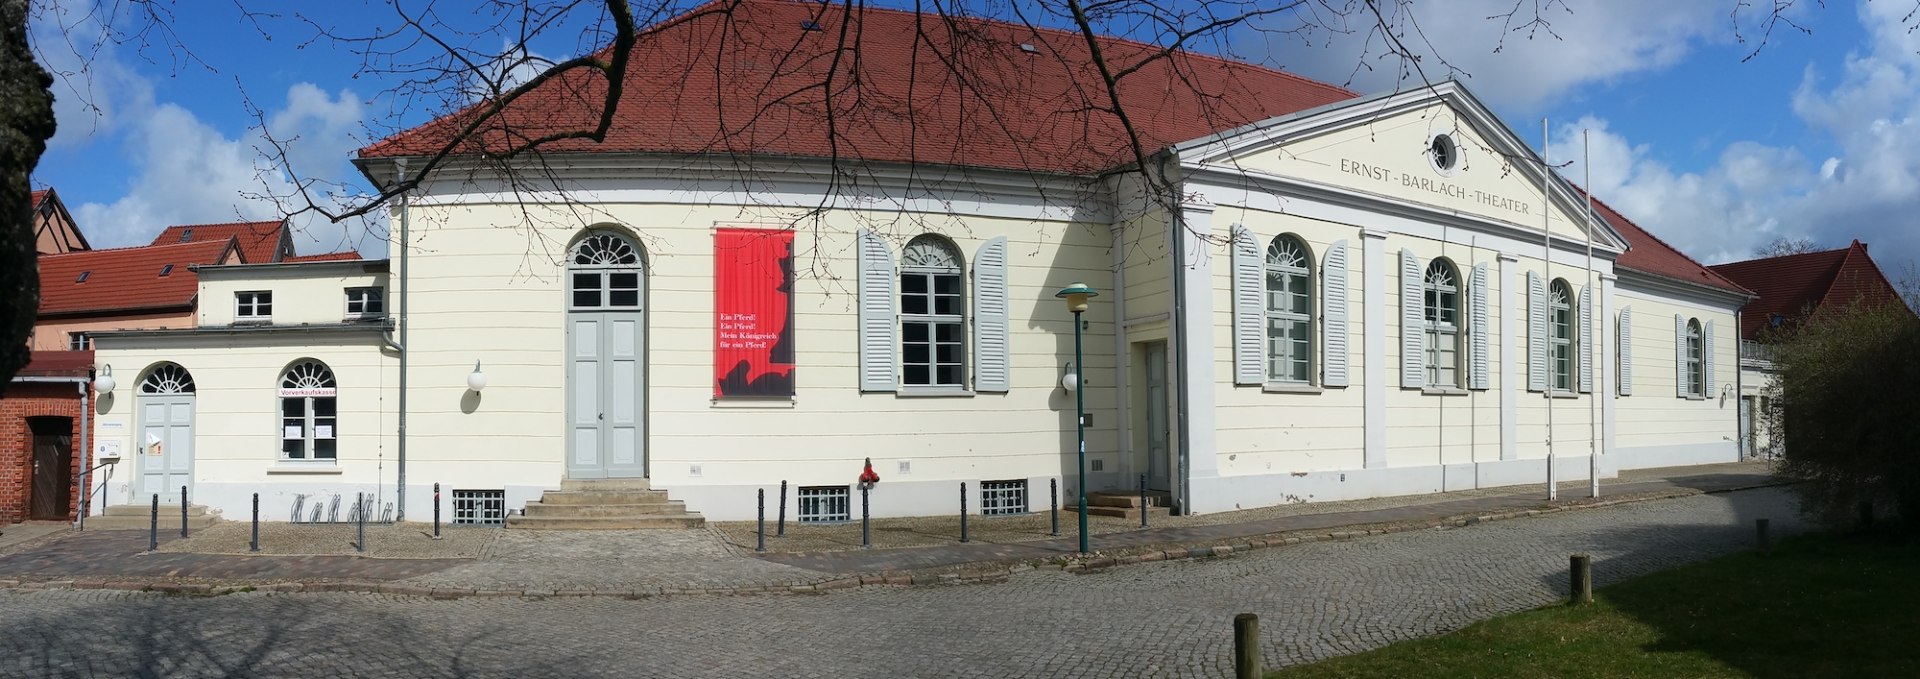 Ernst-Barlach-Theater in Güstrow, © Steffen Goitzsche